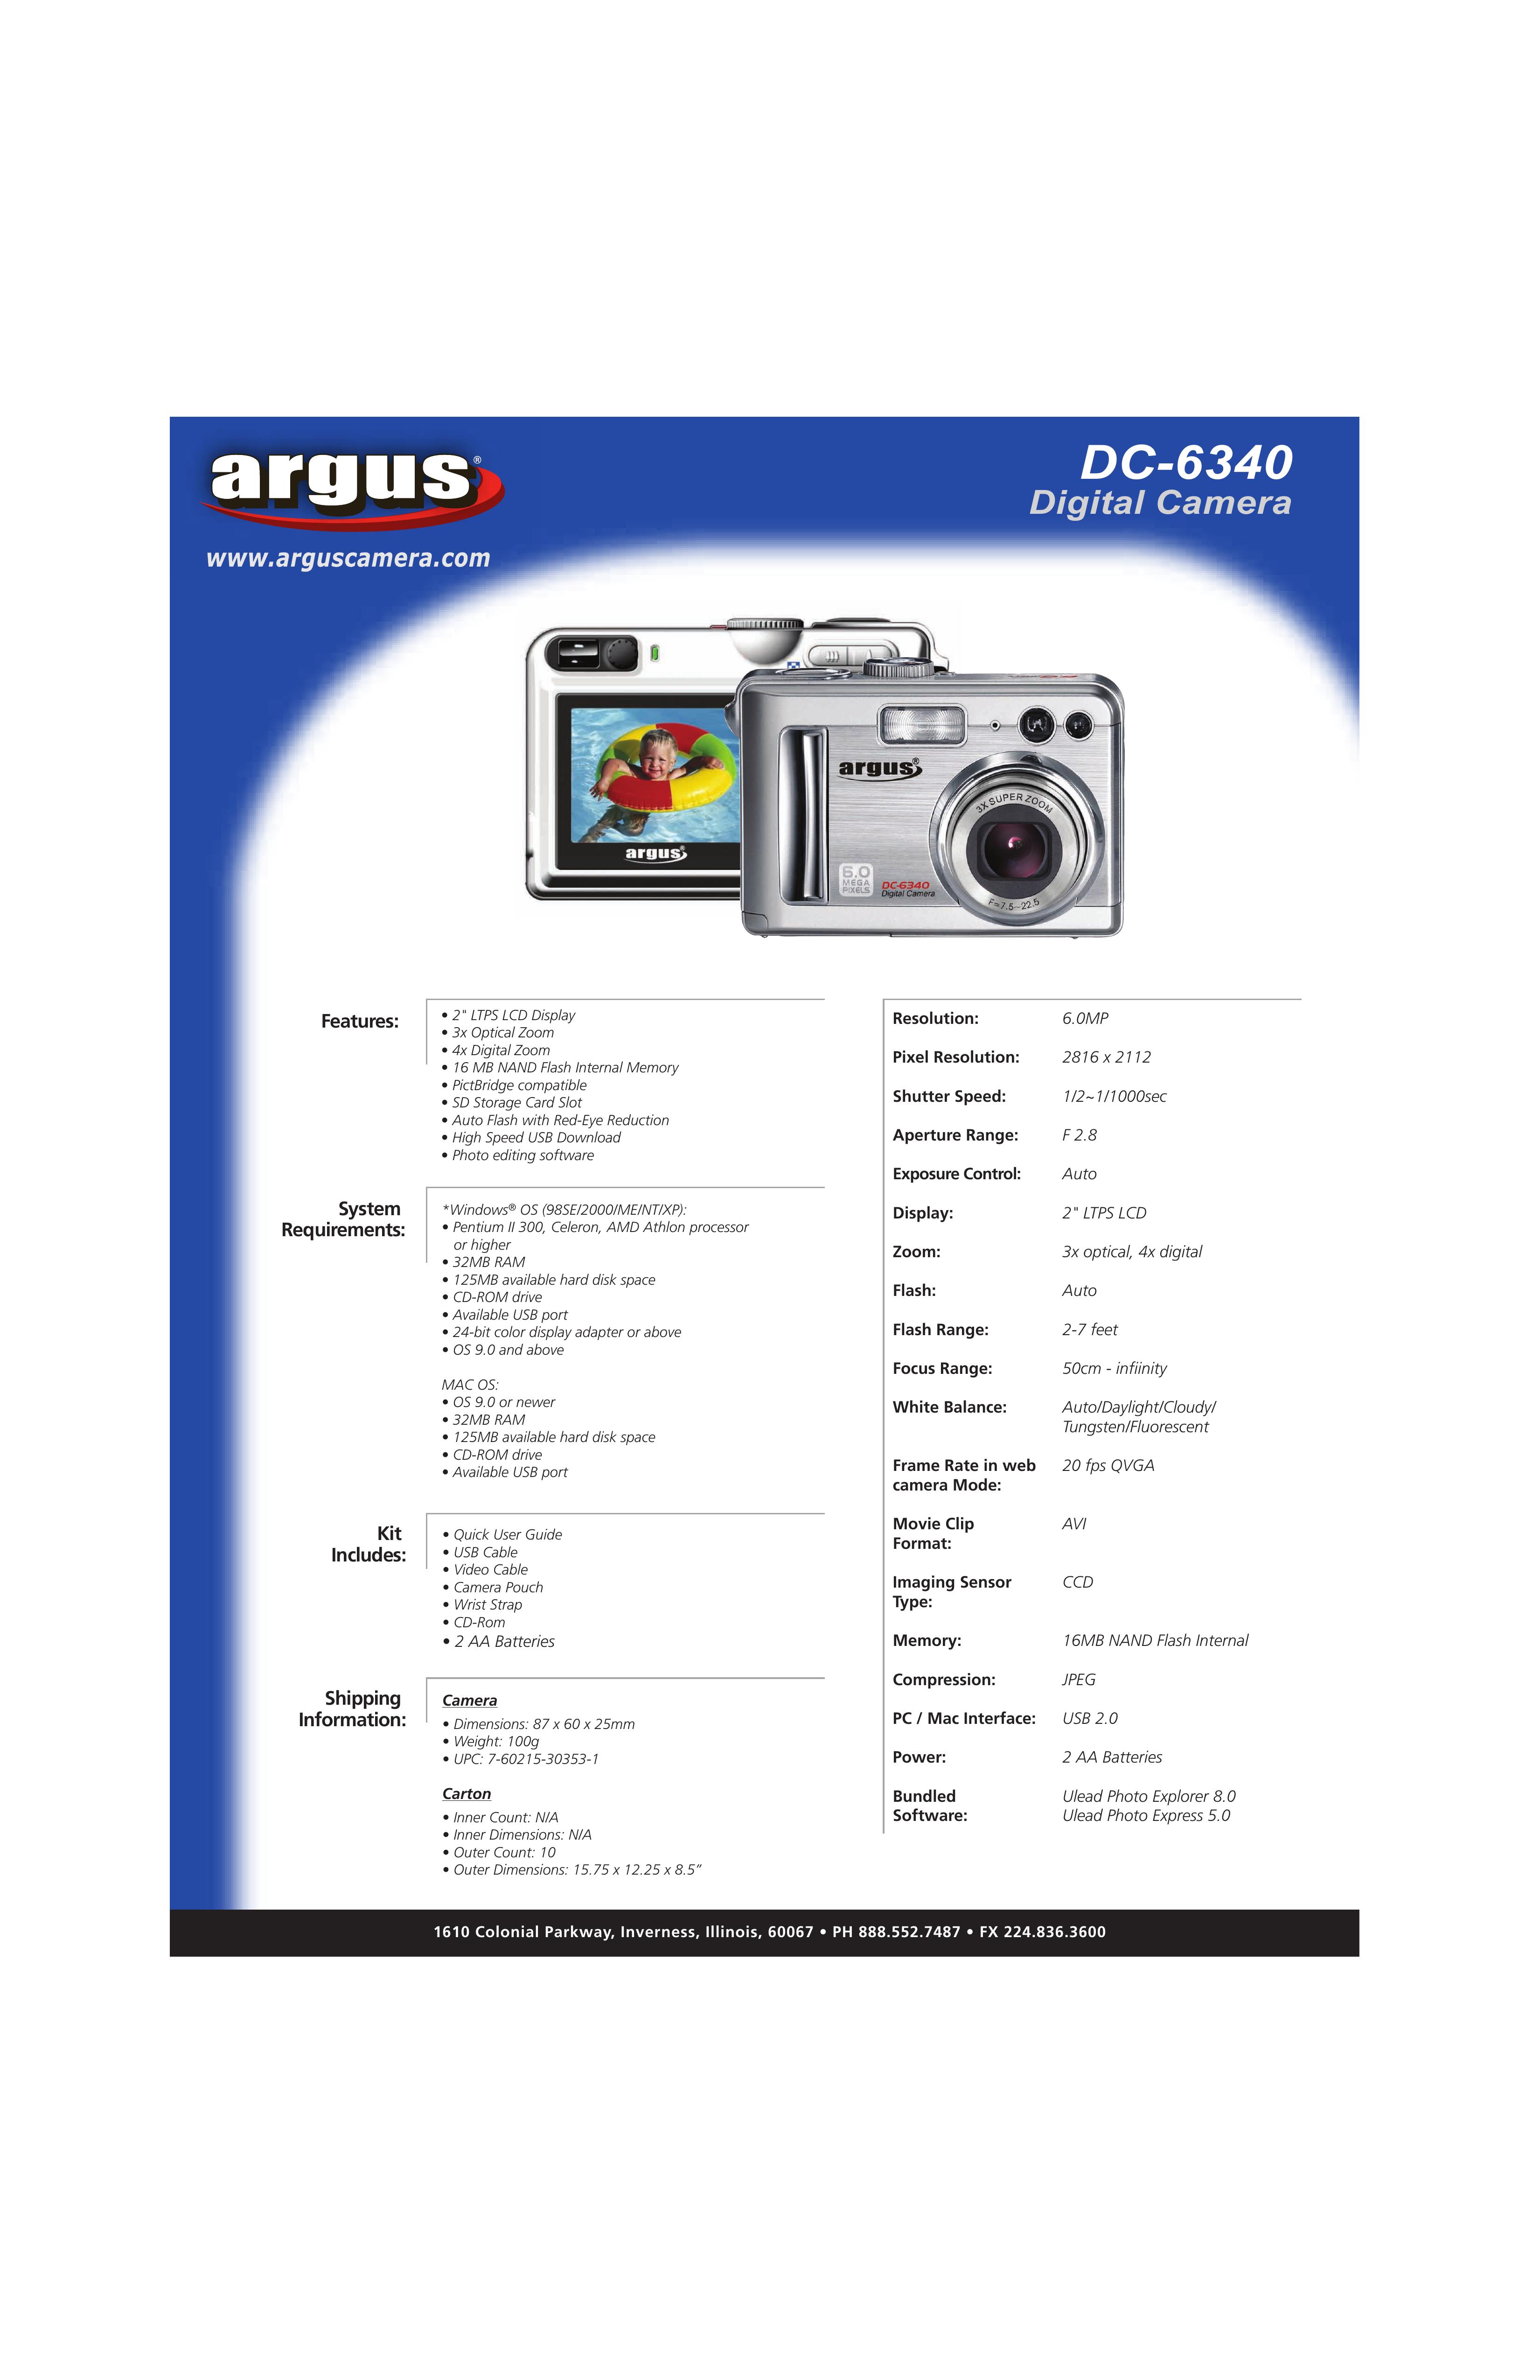 Argus Camera DC-6340 Digital Camera User Manual